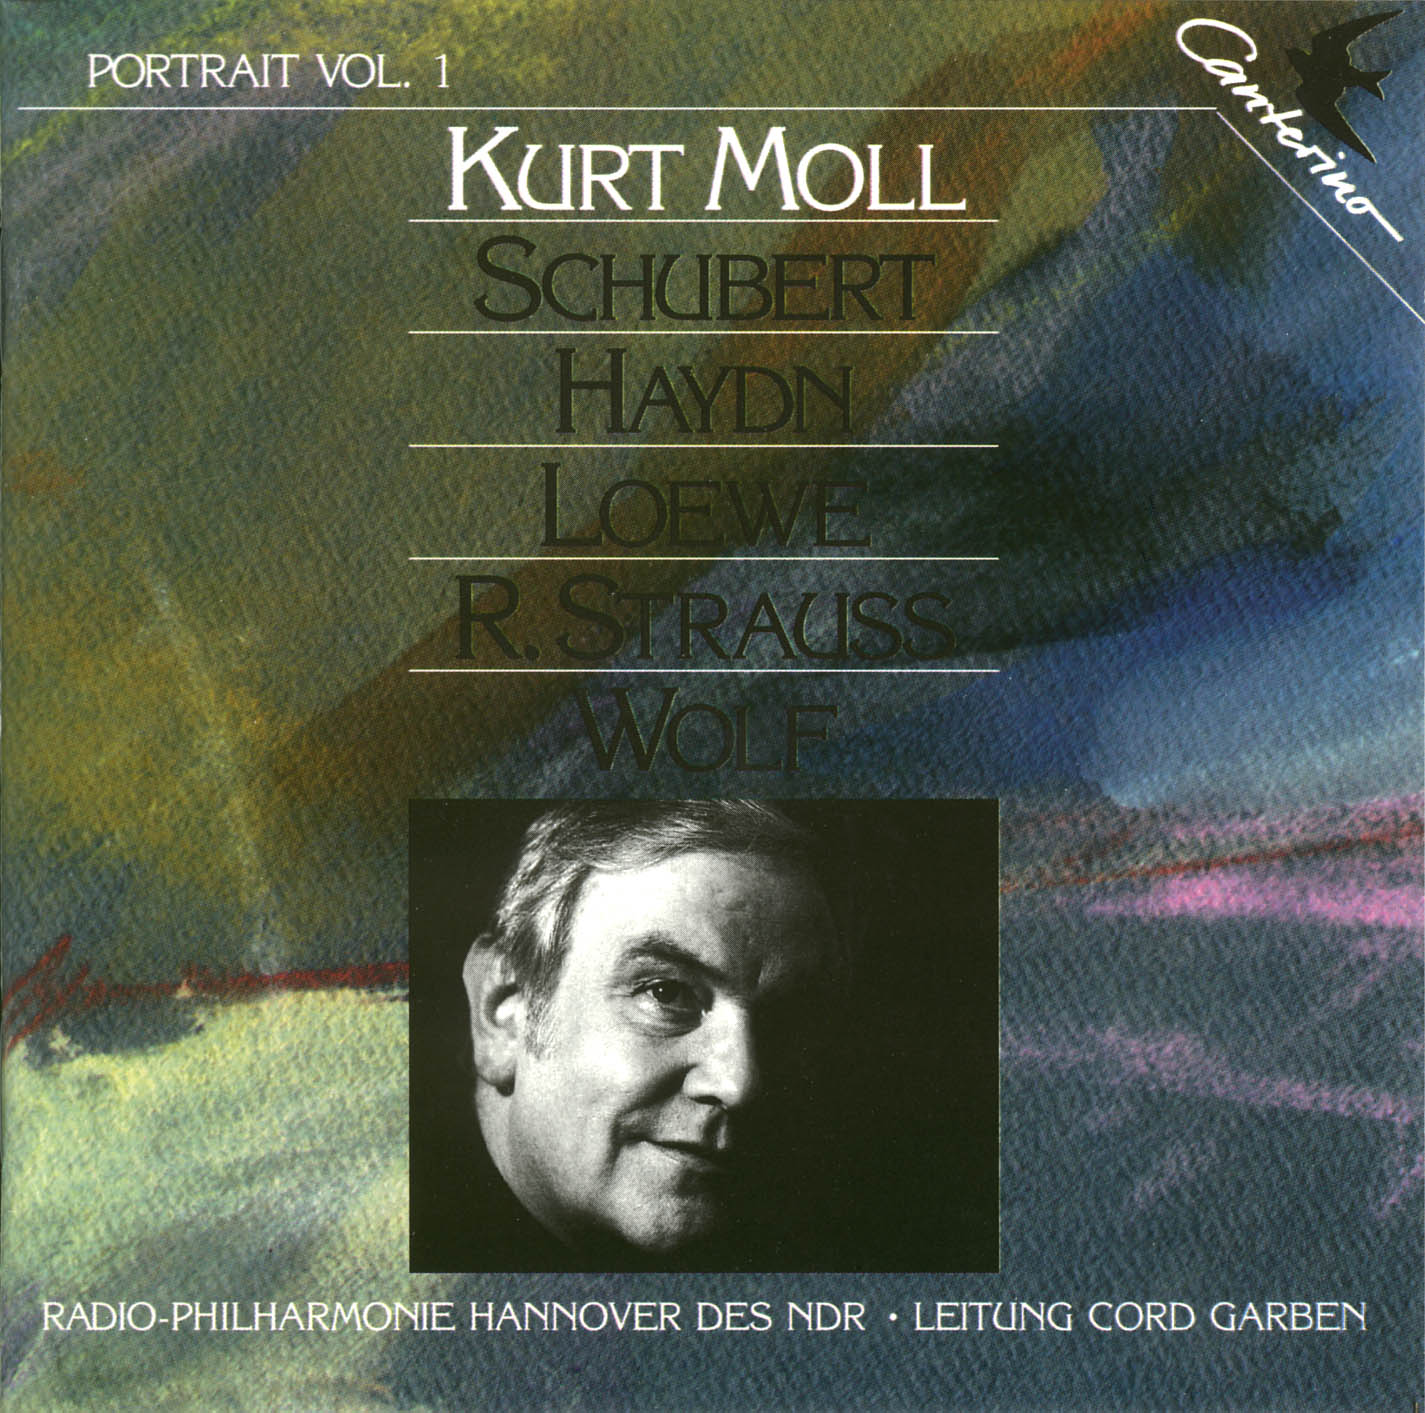 Portrait Vol. 1: Kurt Moll